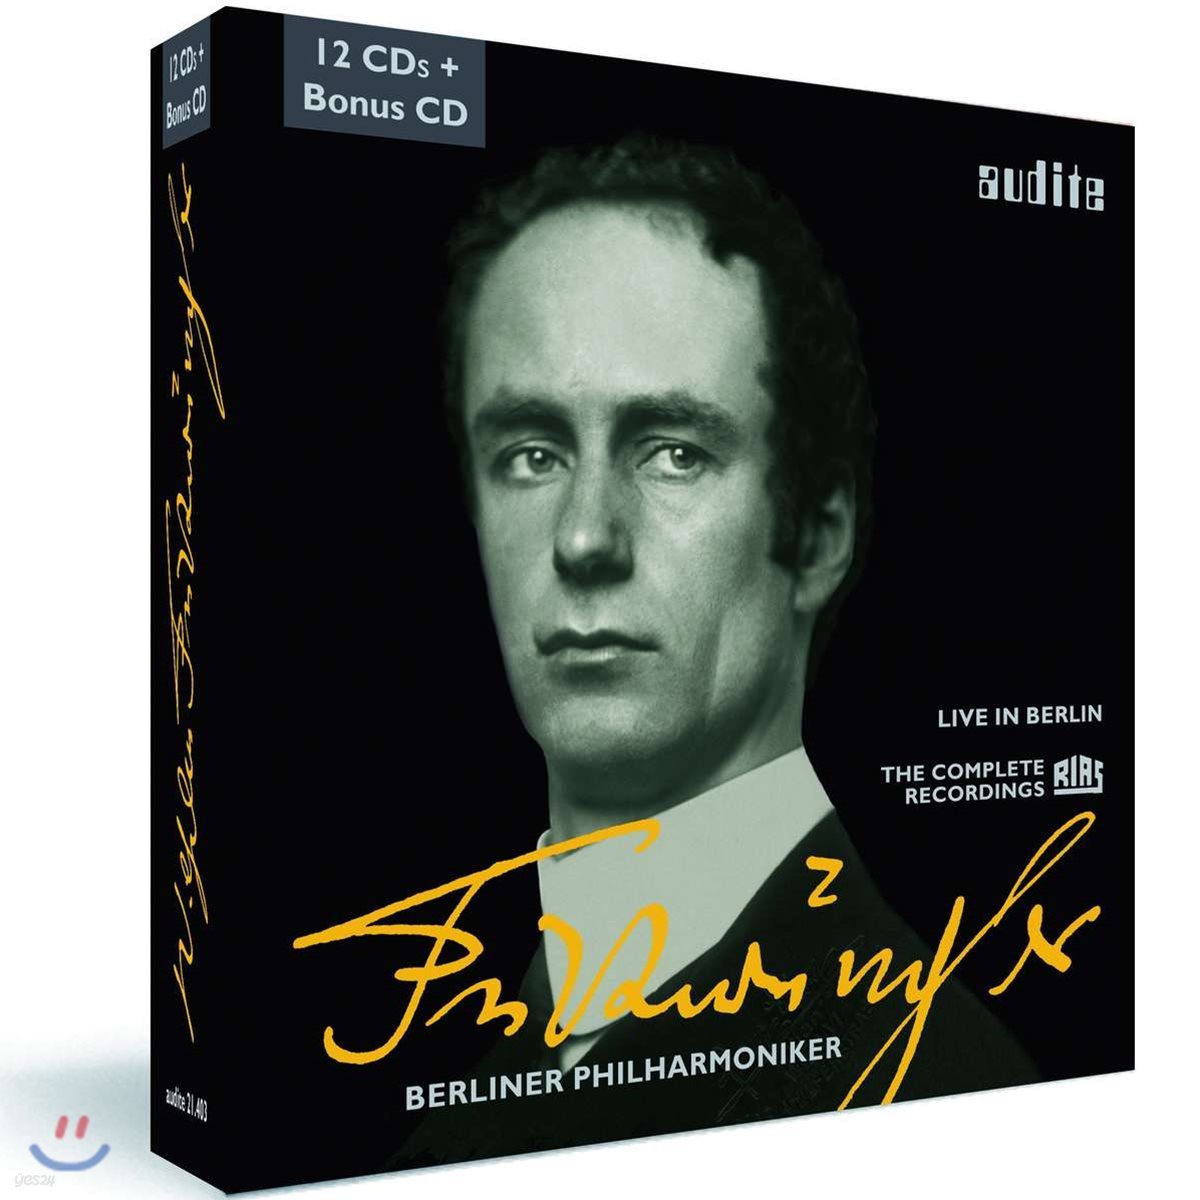 푸르트벵글러 에디션 박스 - 컴플리트 RIAS 레코딩 (Edition Wilhelm Furtwangler - Complete RIAS Recordings) - Wilhelm Furtwangler